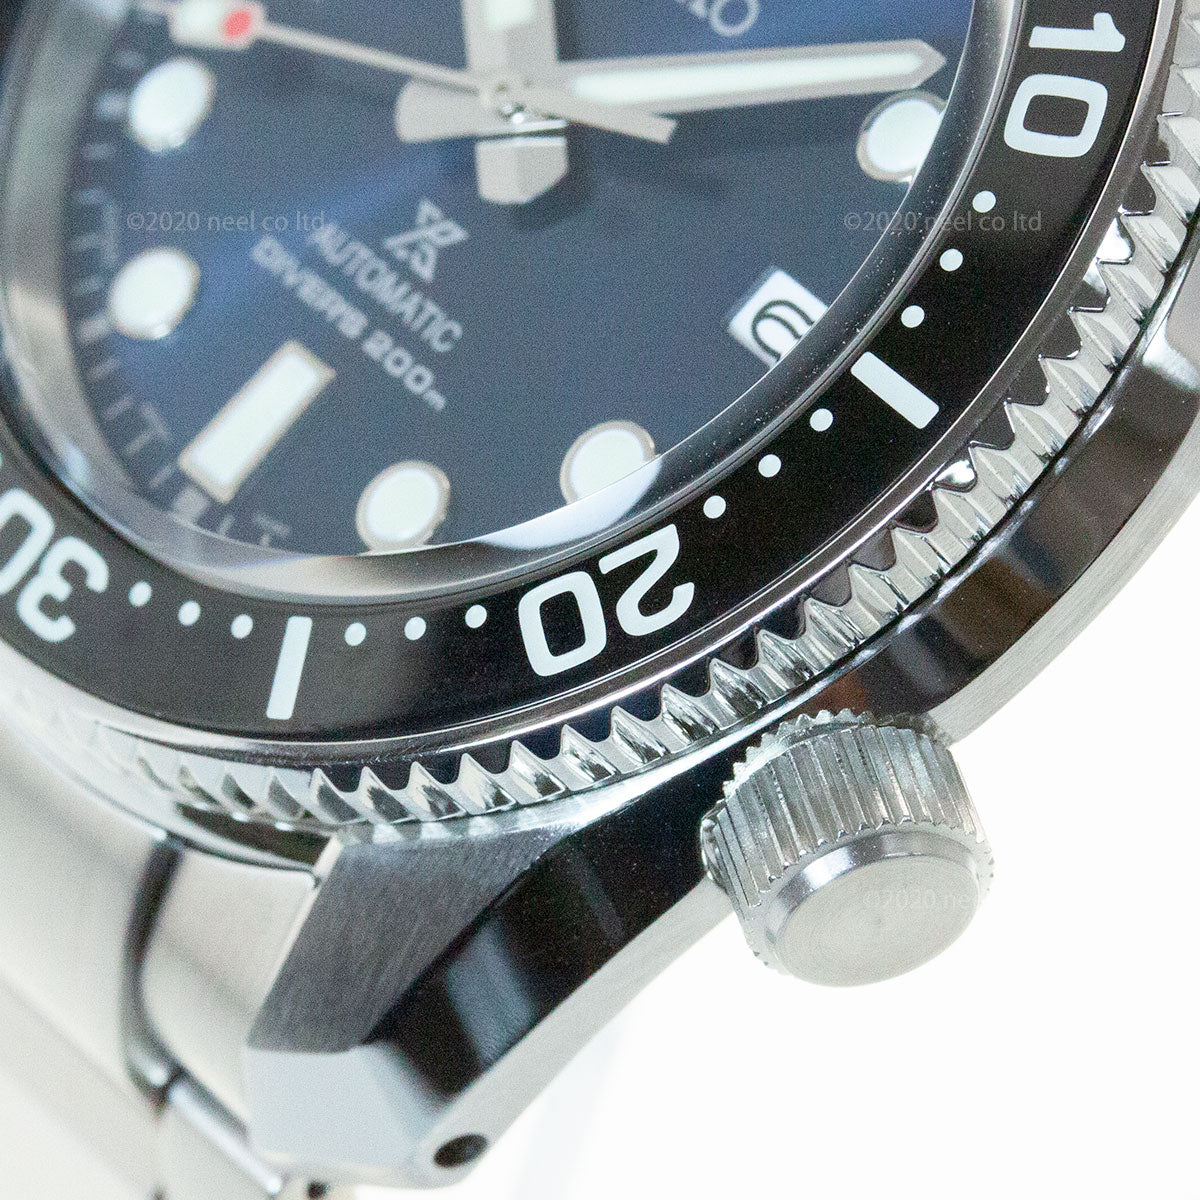 セイコー プロスペックス SEIKO PROSPEX ダイバースキューバ メカニカル 自動巻き コアショップ専用モデル 腕時計 メンズ SBDC127 1968メカニカルダイバーズ 現代デザイン